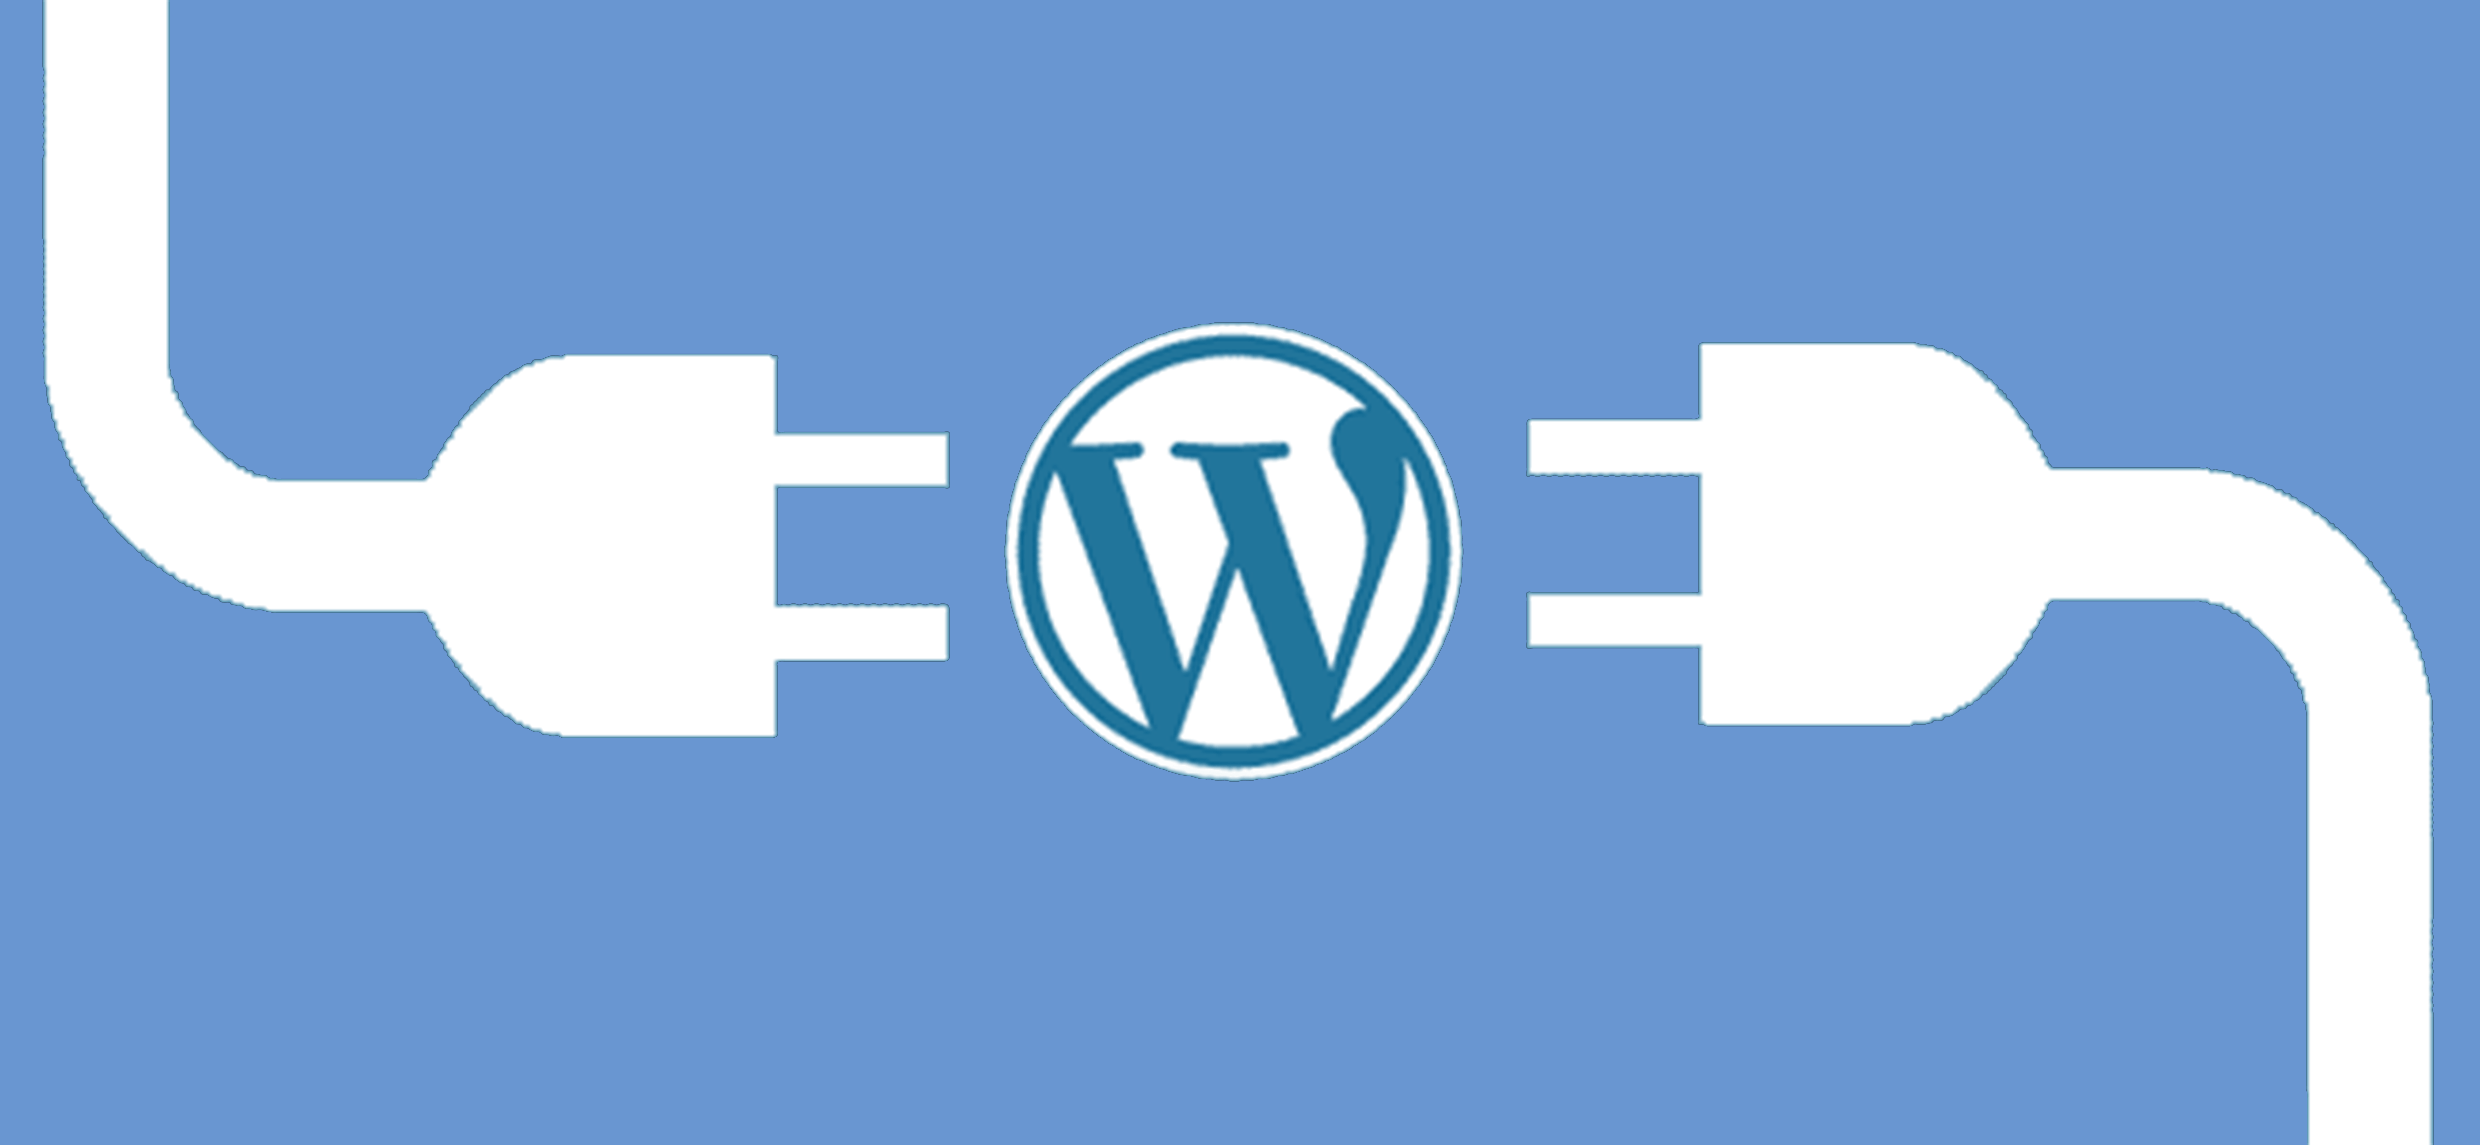 Os melhores plug-ins SEO para WordPress - Otimização de Sites SEO